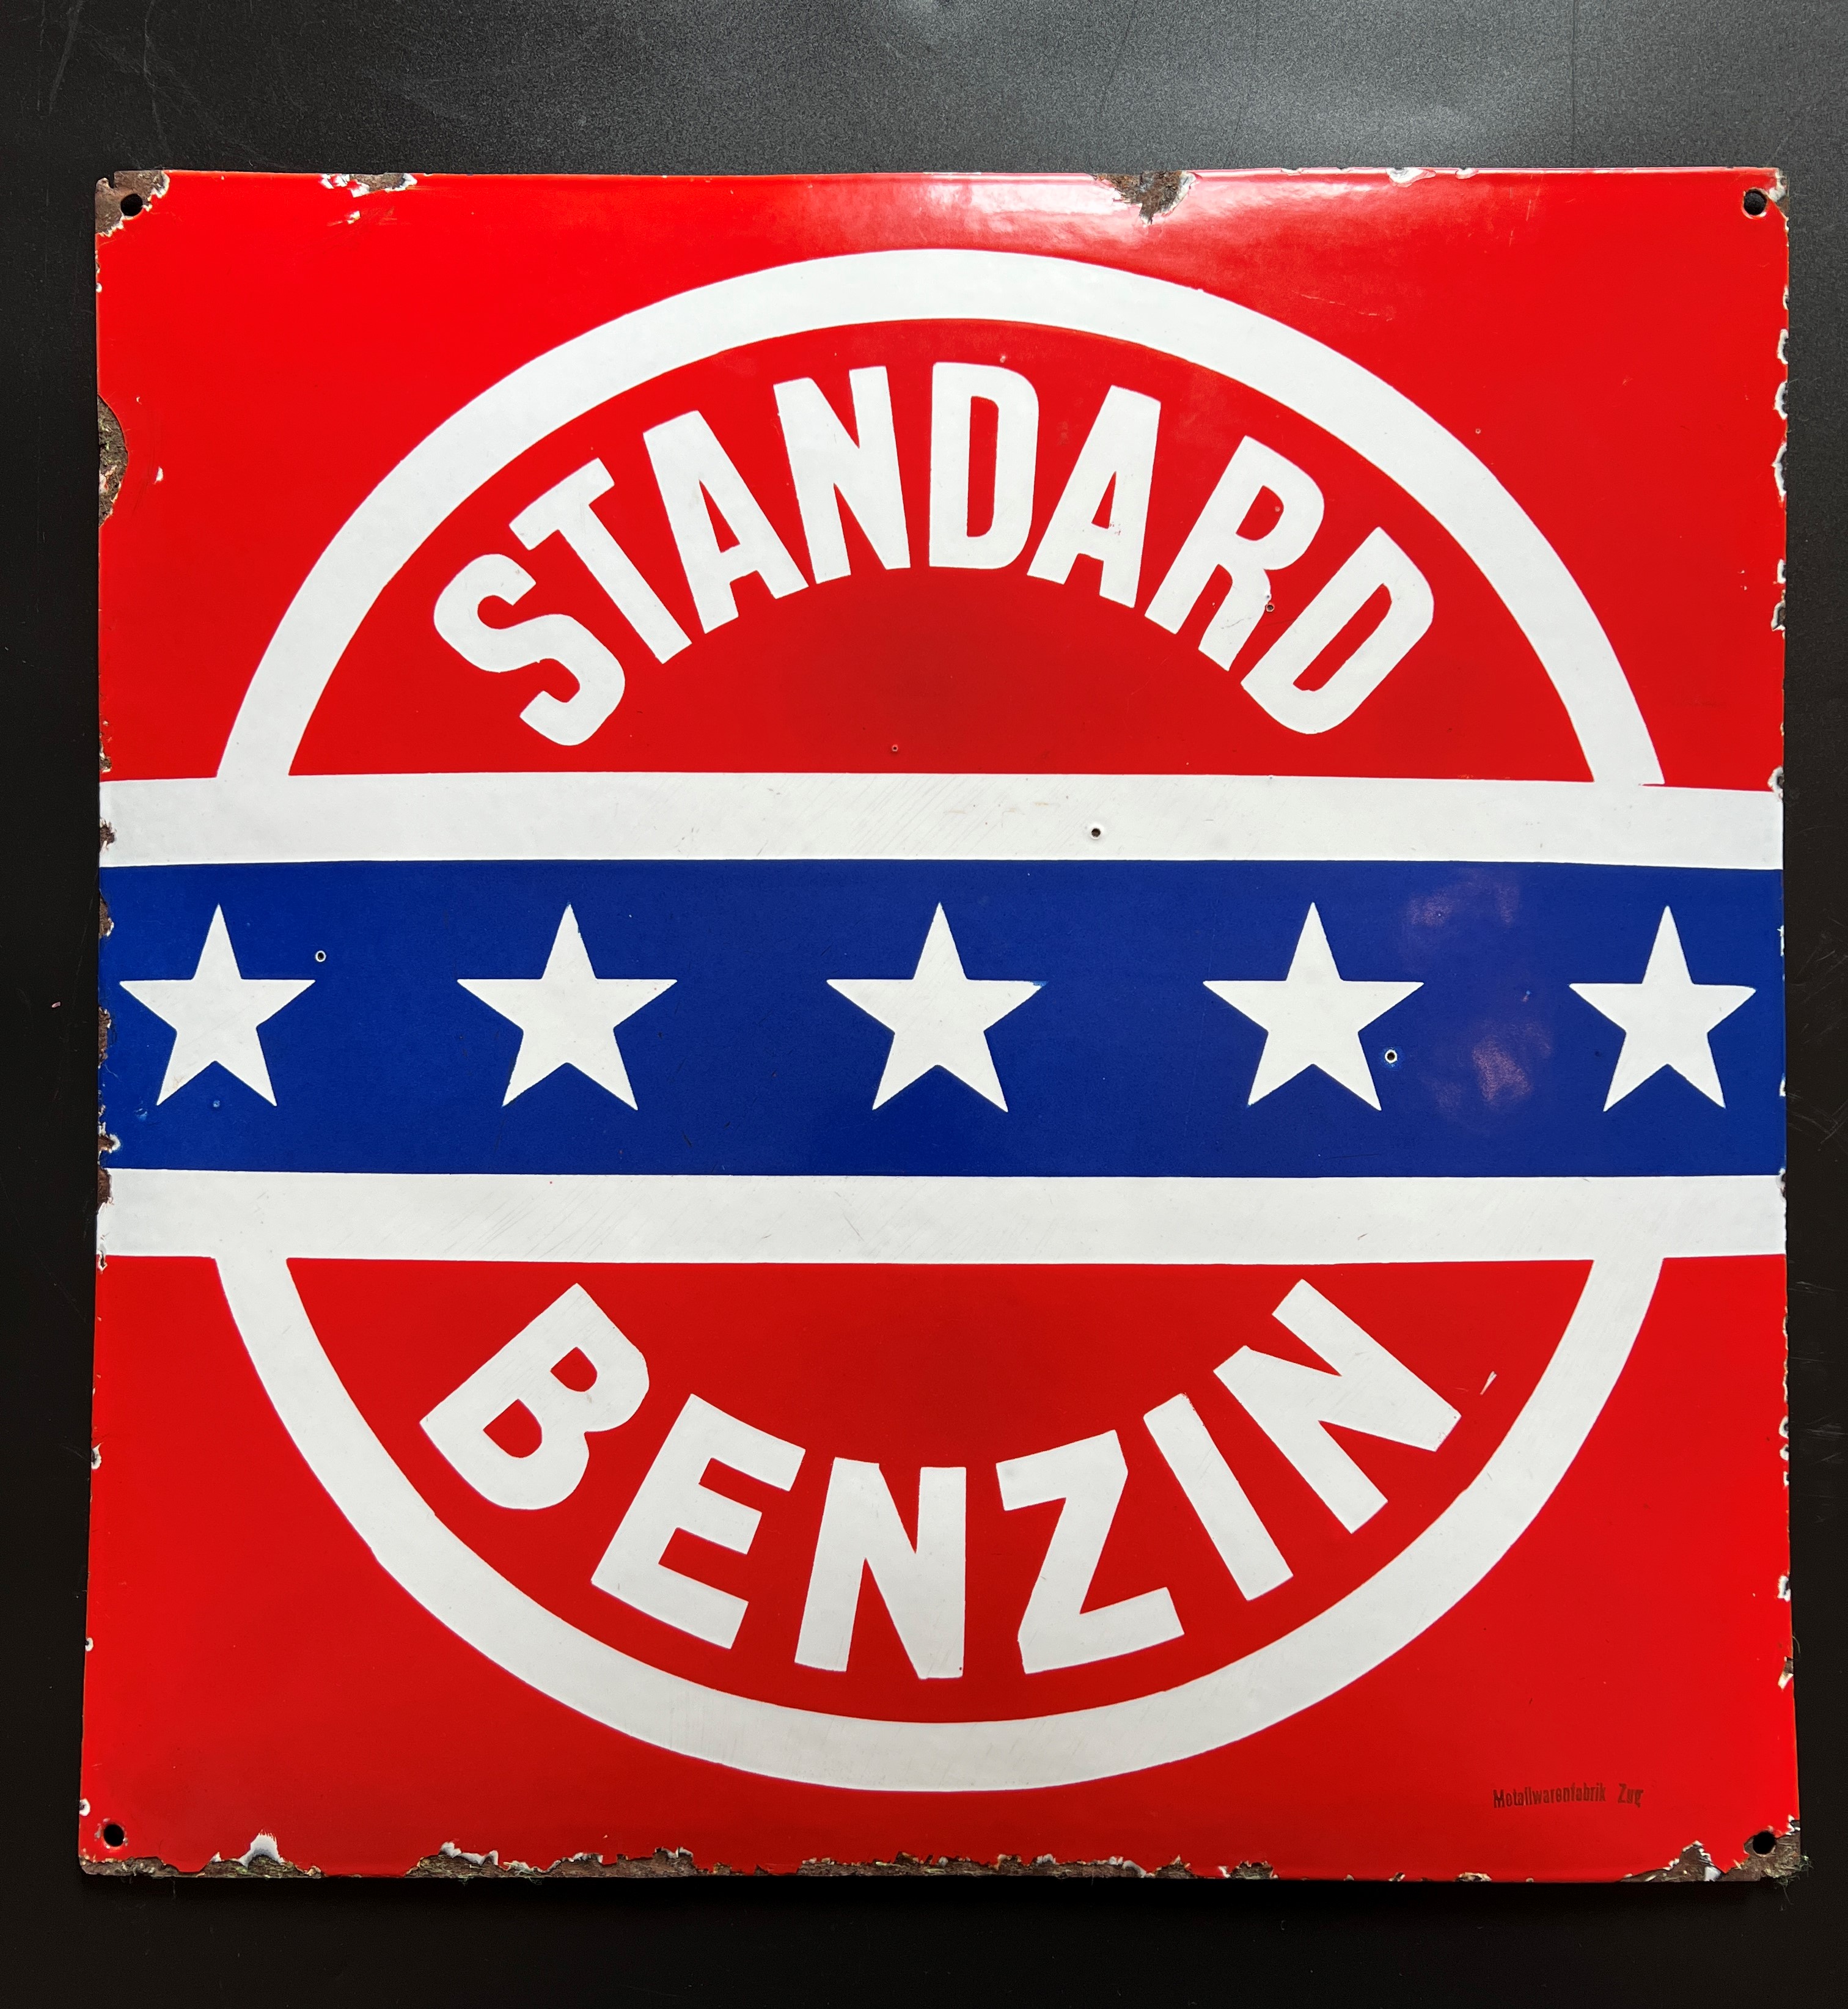 Altes Emailschild Standard Benzin Schweiz um 1940